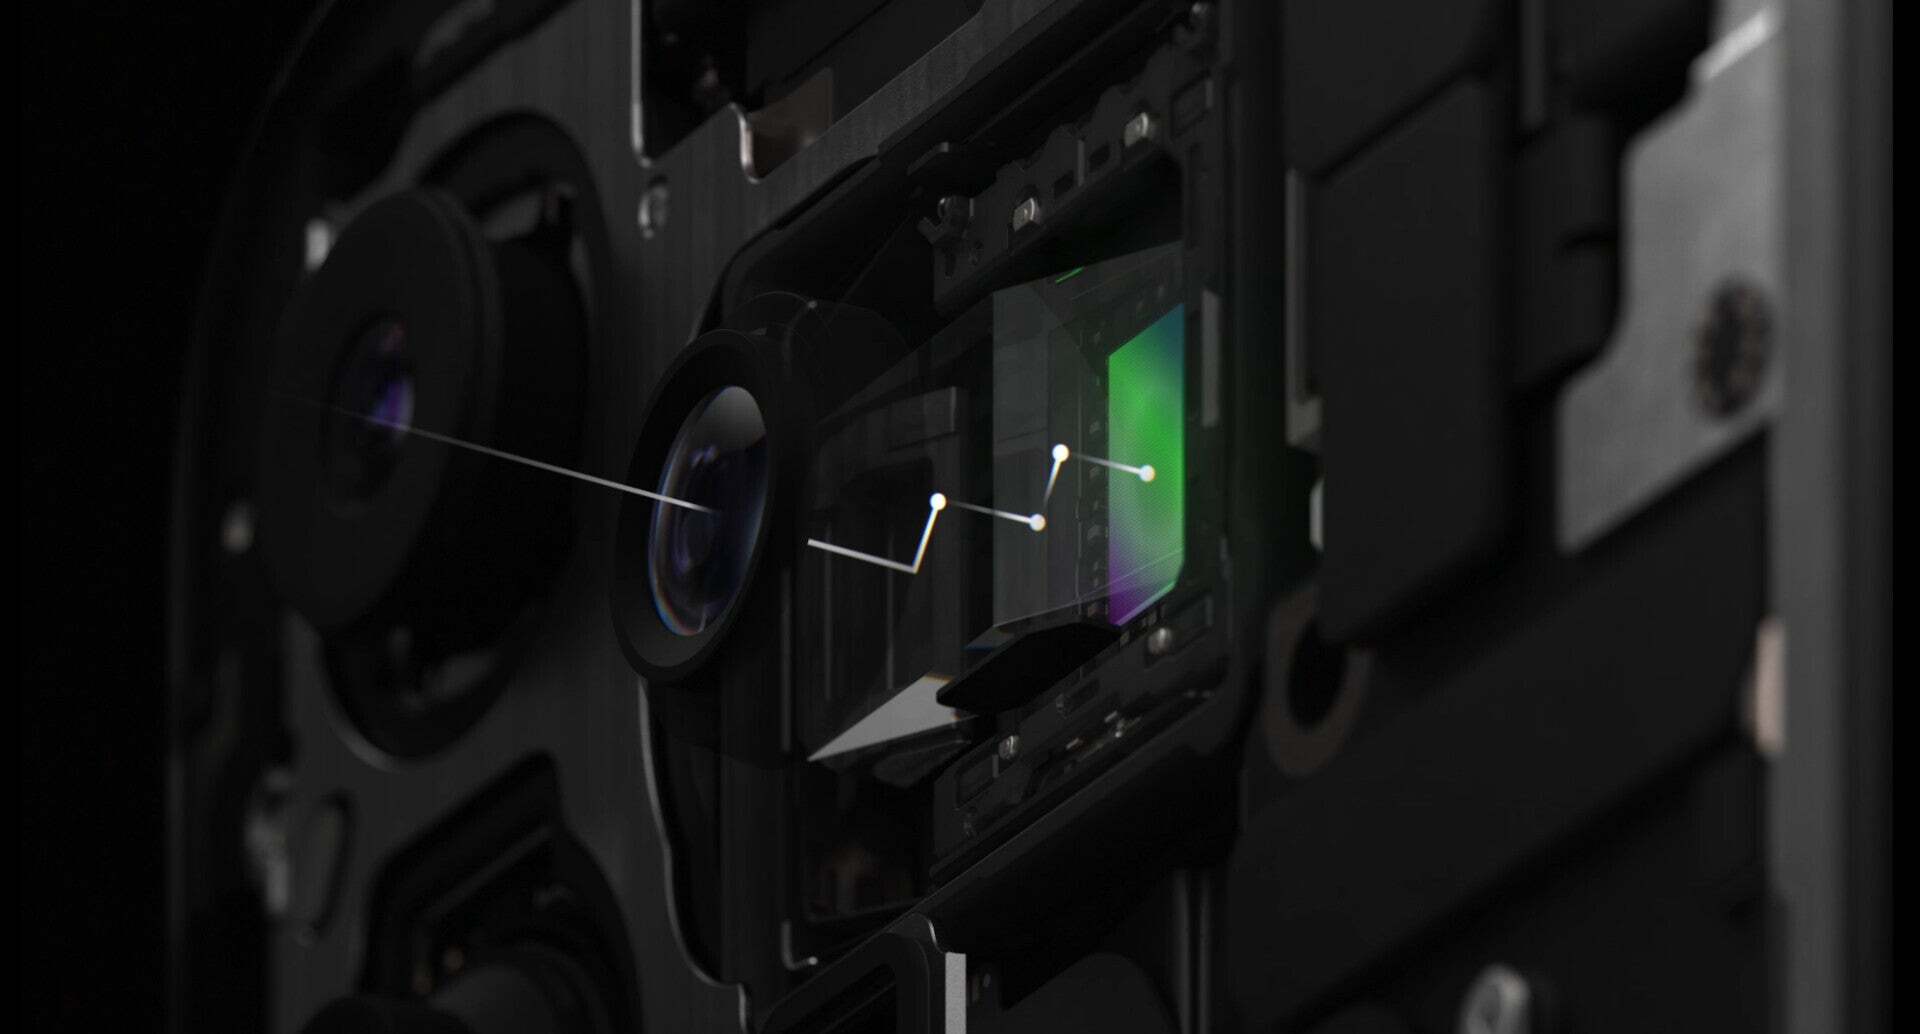 Das Tetraprisma-Design verwendet vier Prismen, um Licht durch Röhren zu reflektieren, um den Bildsensor zu erreichen – Eine Tetraprisma-Kamera für das iPhone 16 Pro ist jetzt wahrscheinlicher, sagt ein Top-Analyst